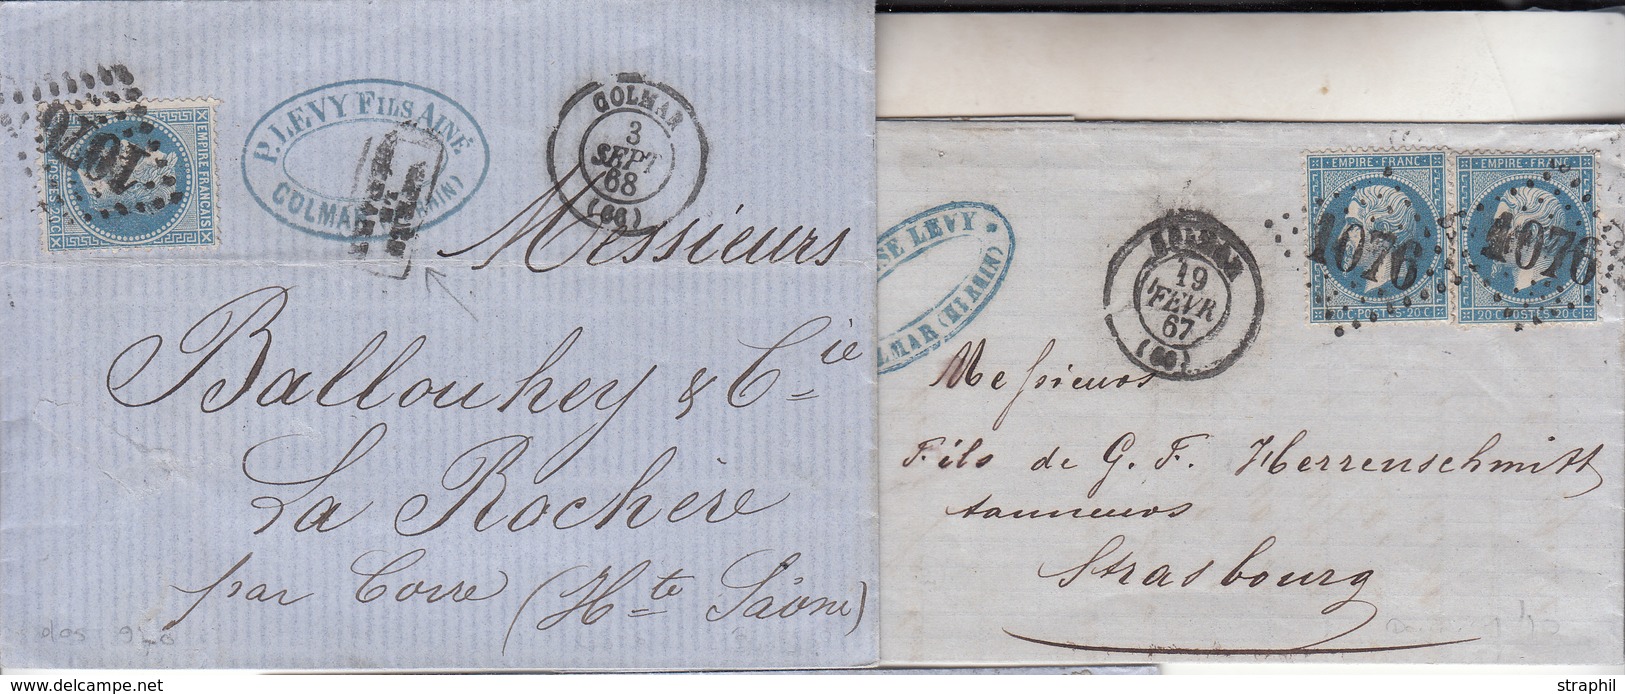 LAC 2 Plis Colmar - Datés 1867, 1868 (Dble Port) - TB - Briefe U. Dokumente